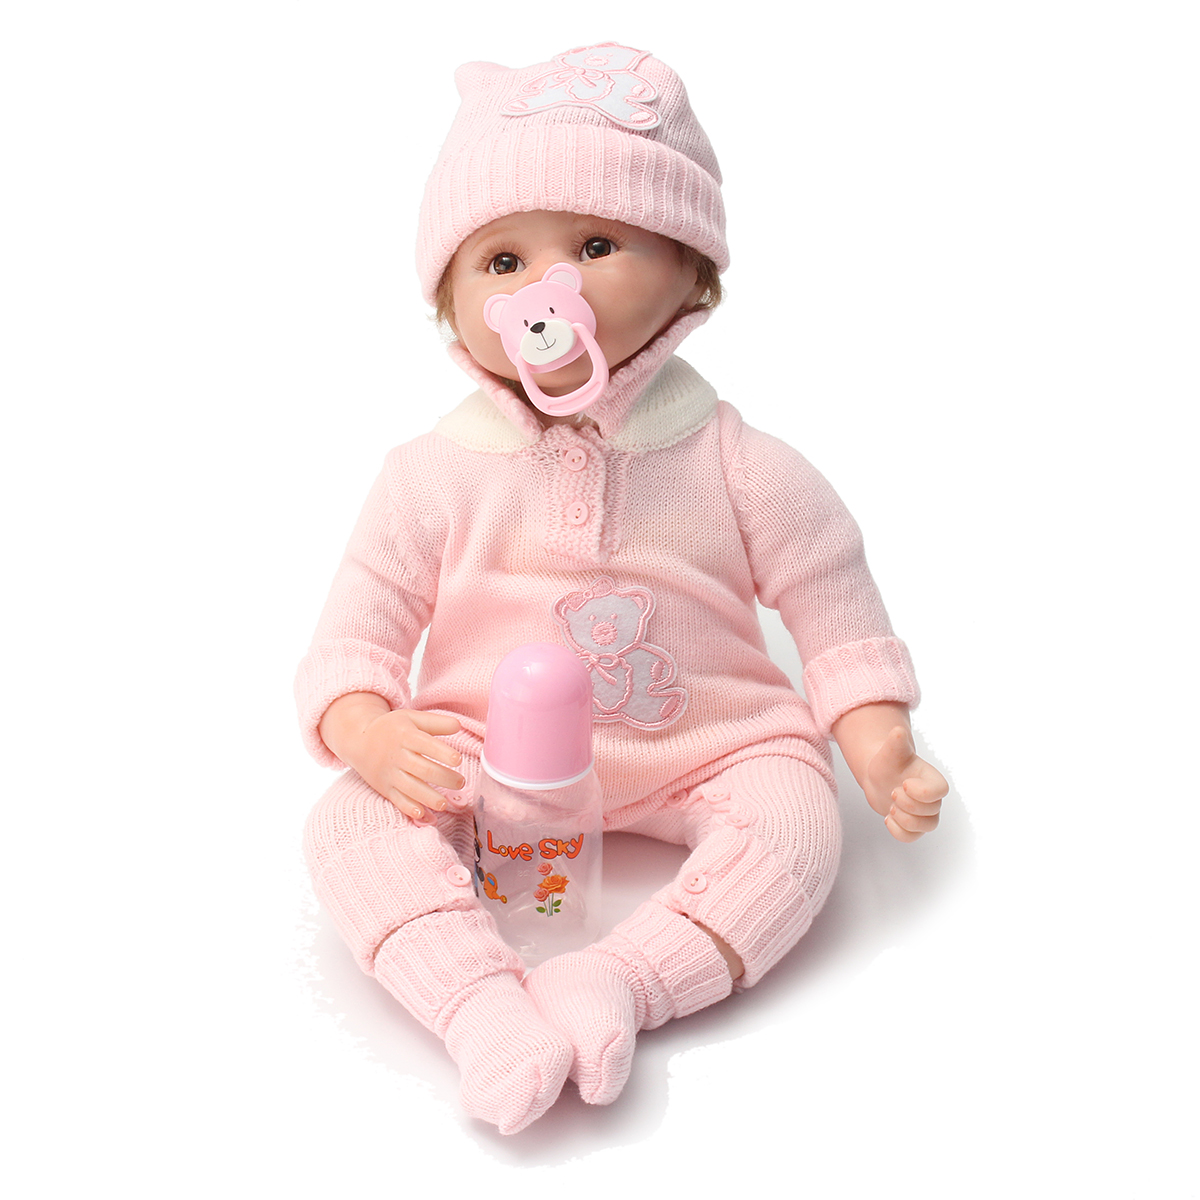 50cm Silicone Reborn Baby Doll Toy Realistic Cute Newborn ...